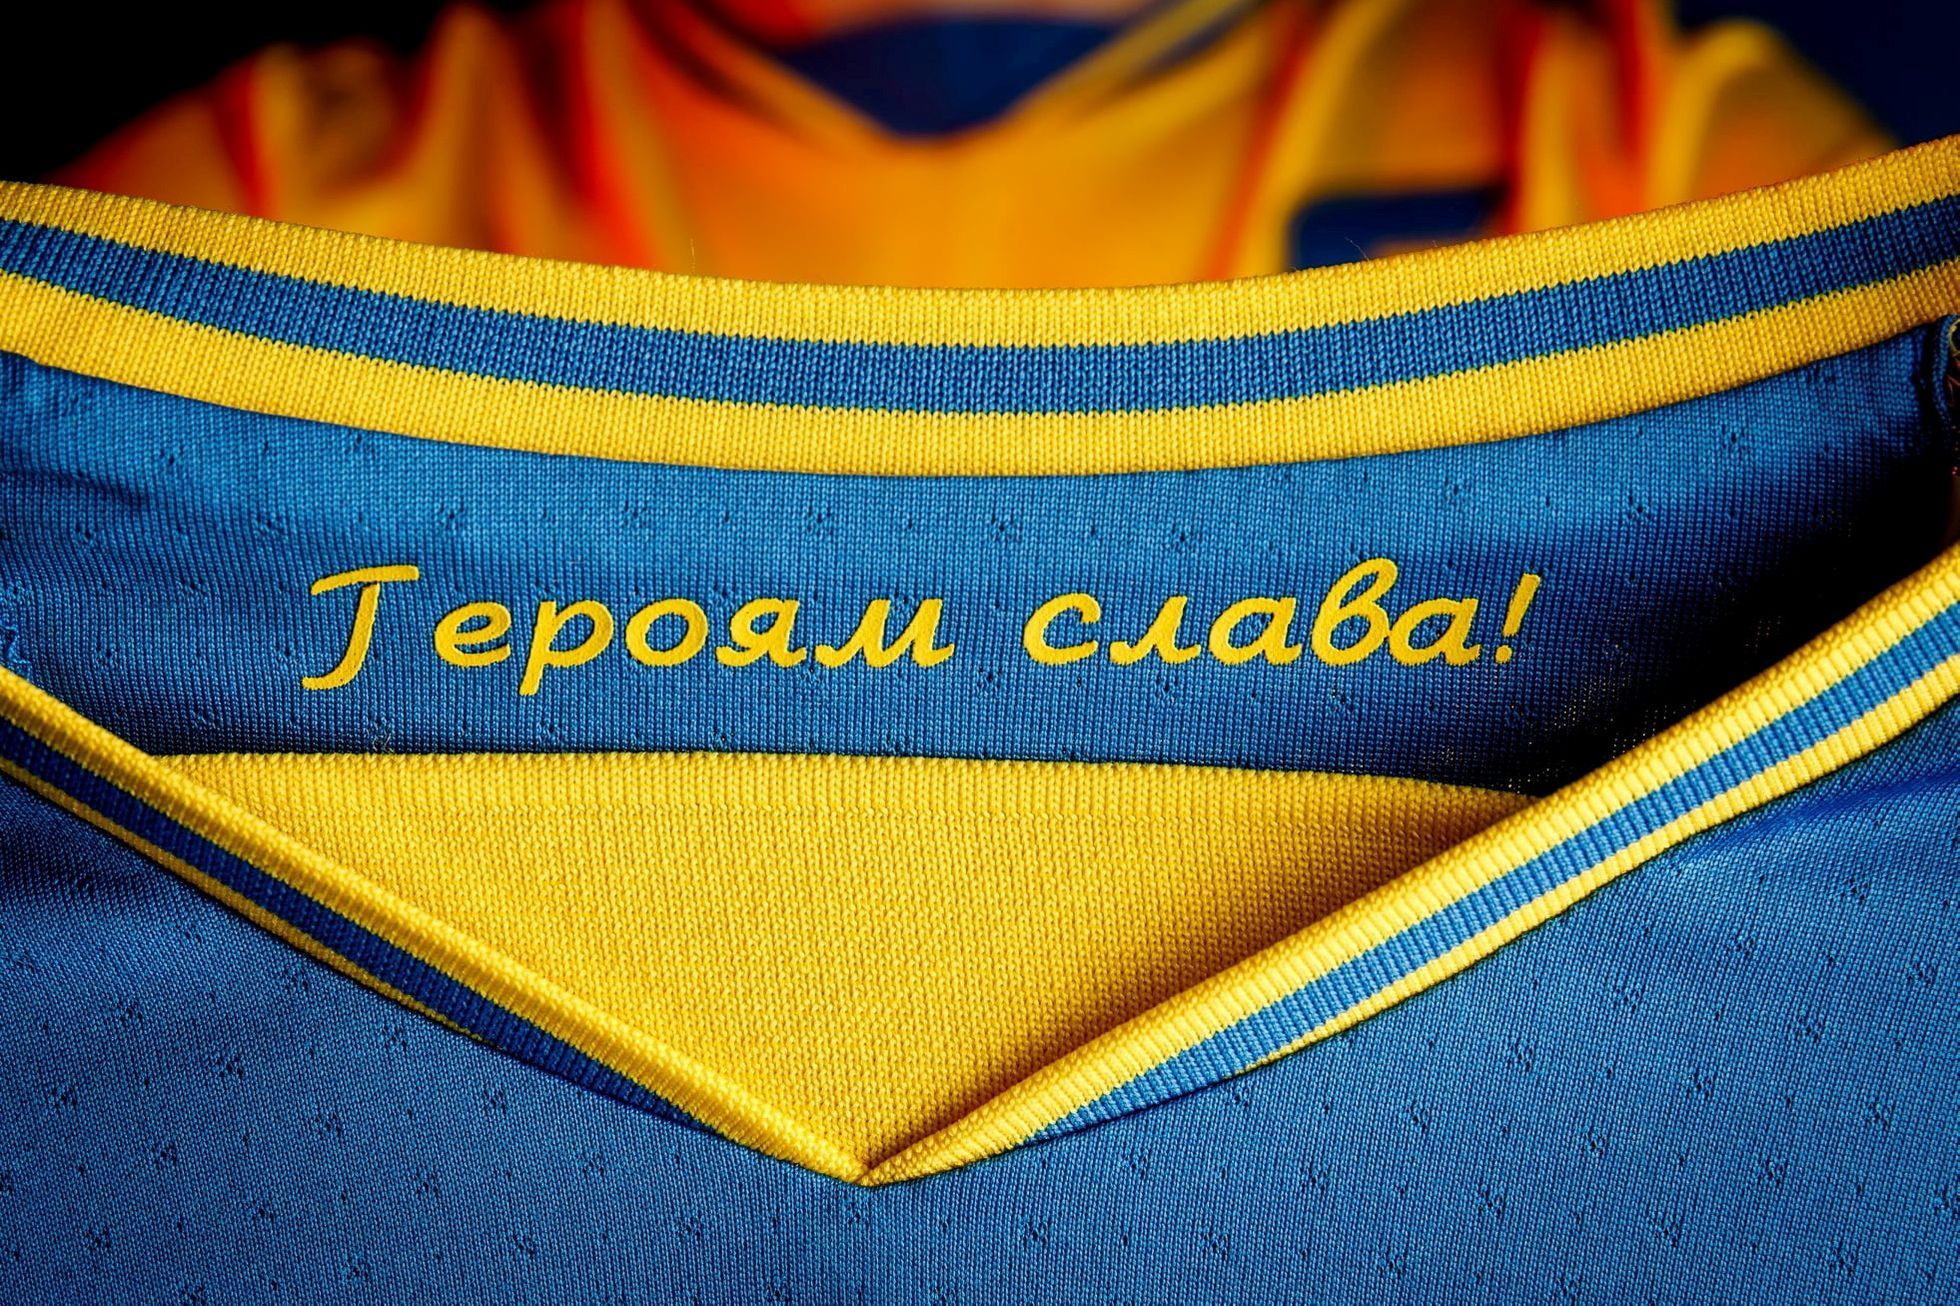 Nápis Sláva hrdinům, který UEFA žádala po Ukrajincích odstranit.